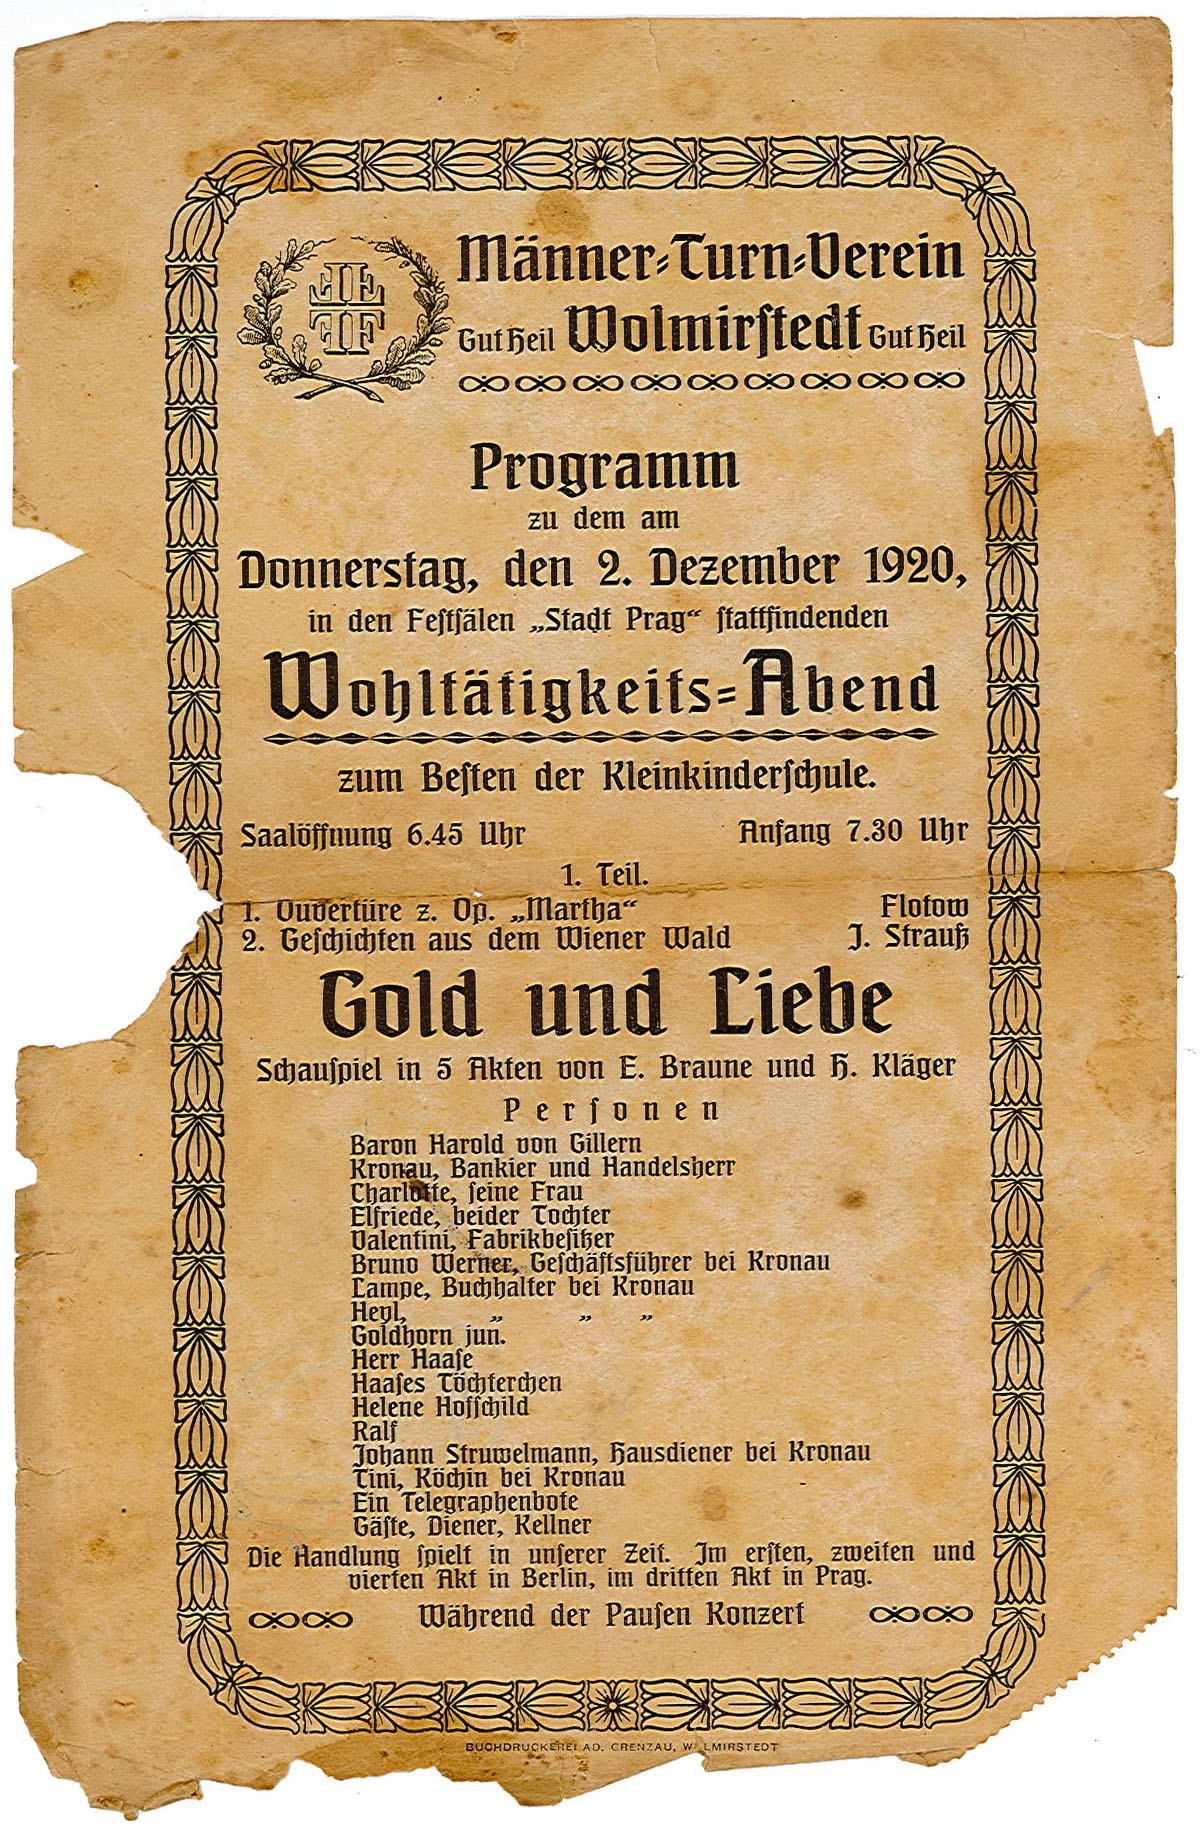 Programmzettel Wohltätigkeitsabend des Mäner-Turn-Verein Wolmirstedt, 02.12.1920 (Museum Wolmirstedt RR-F)